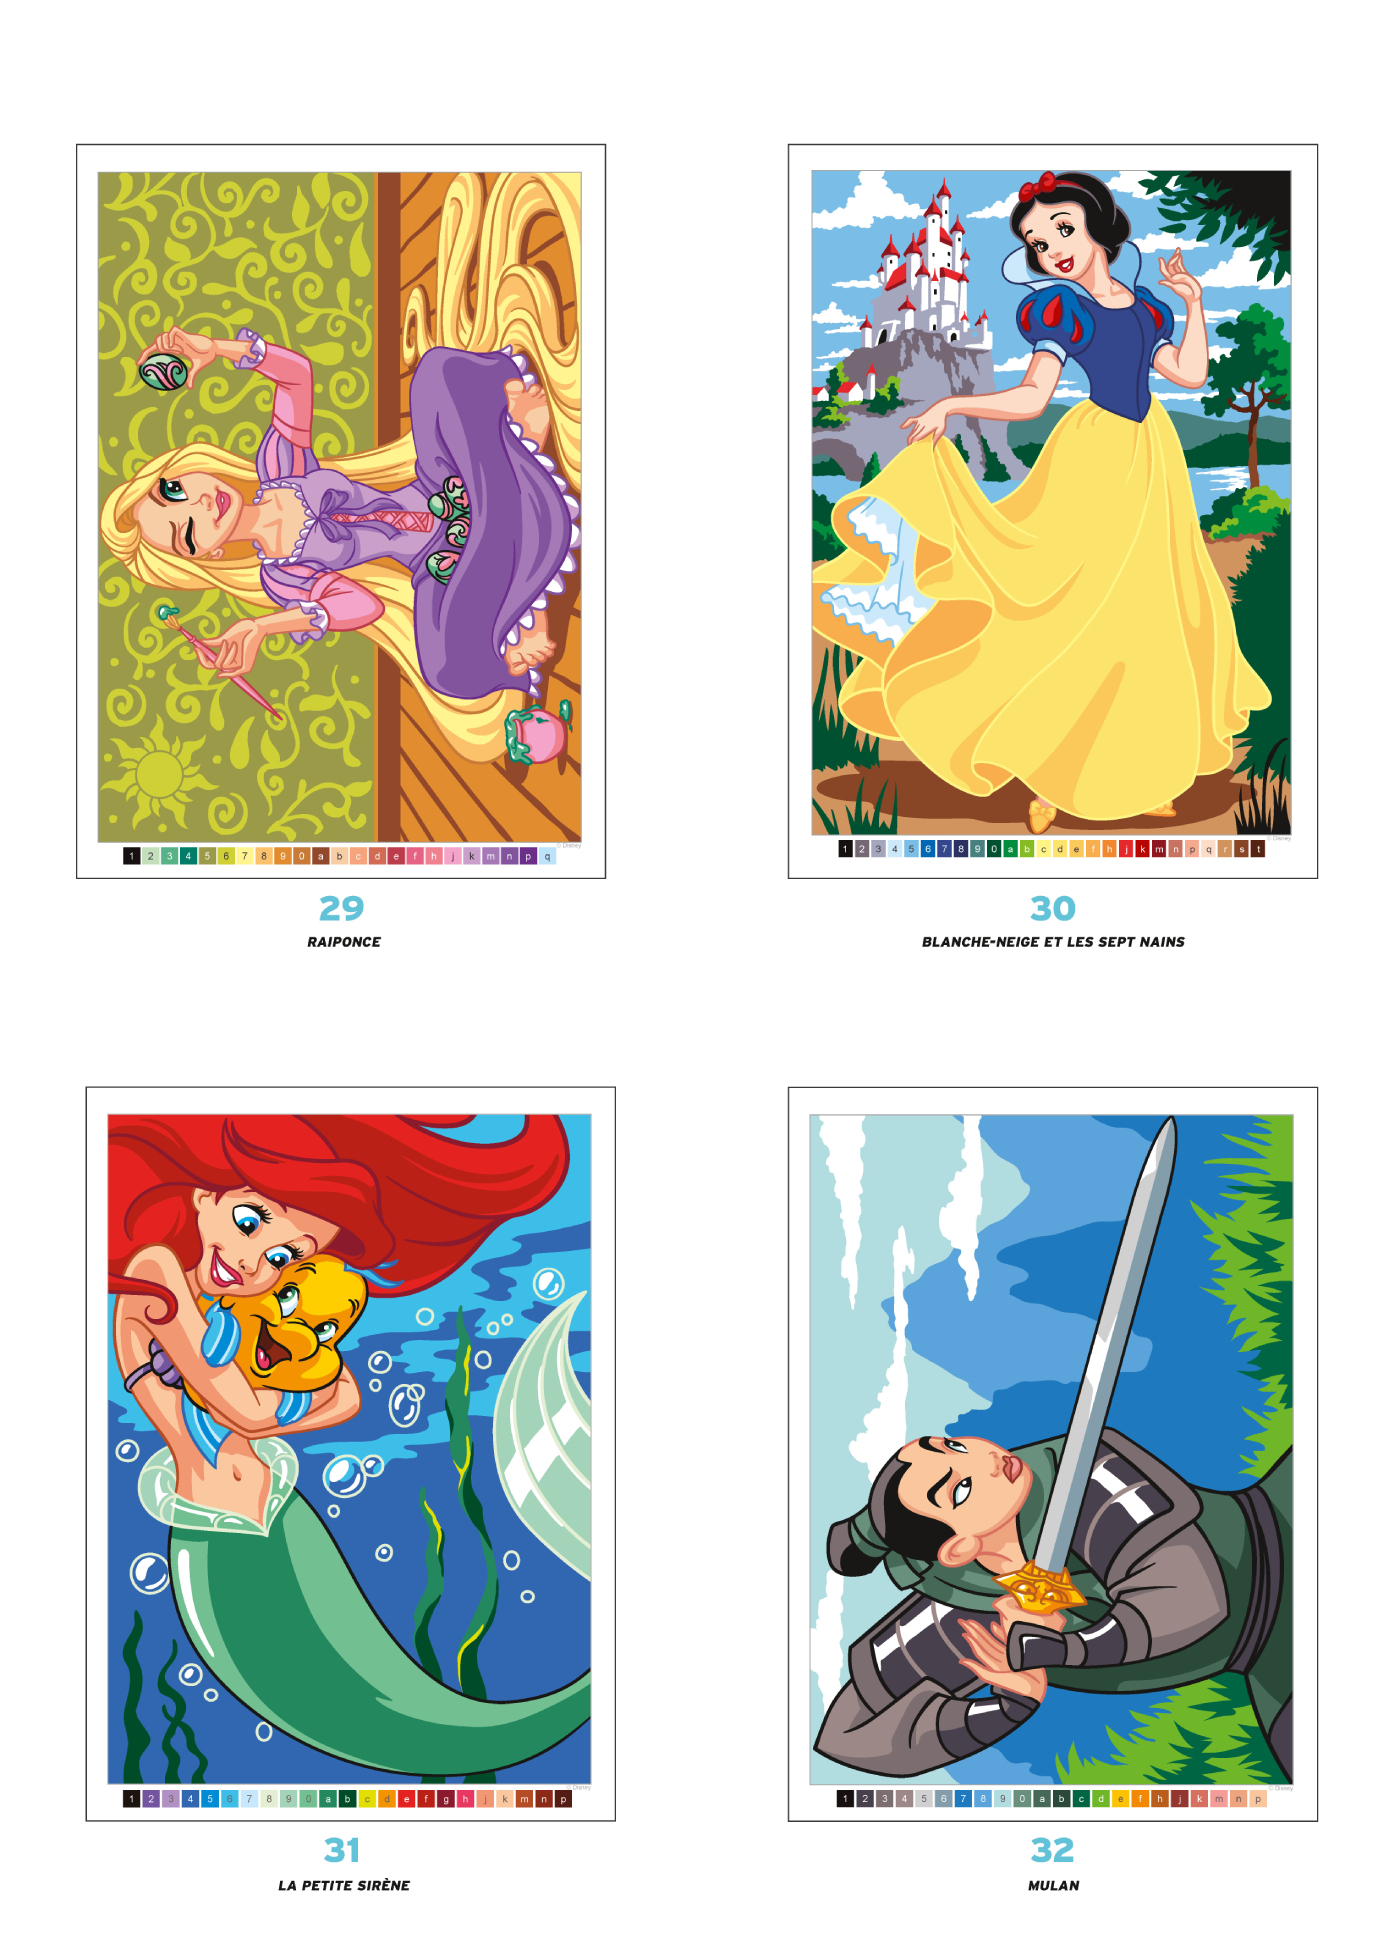 Coloriages mystères Disney - Princesses - Coloriez les chiffres et  découvrez l'image - (EAN13 : 9782019457150)